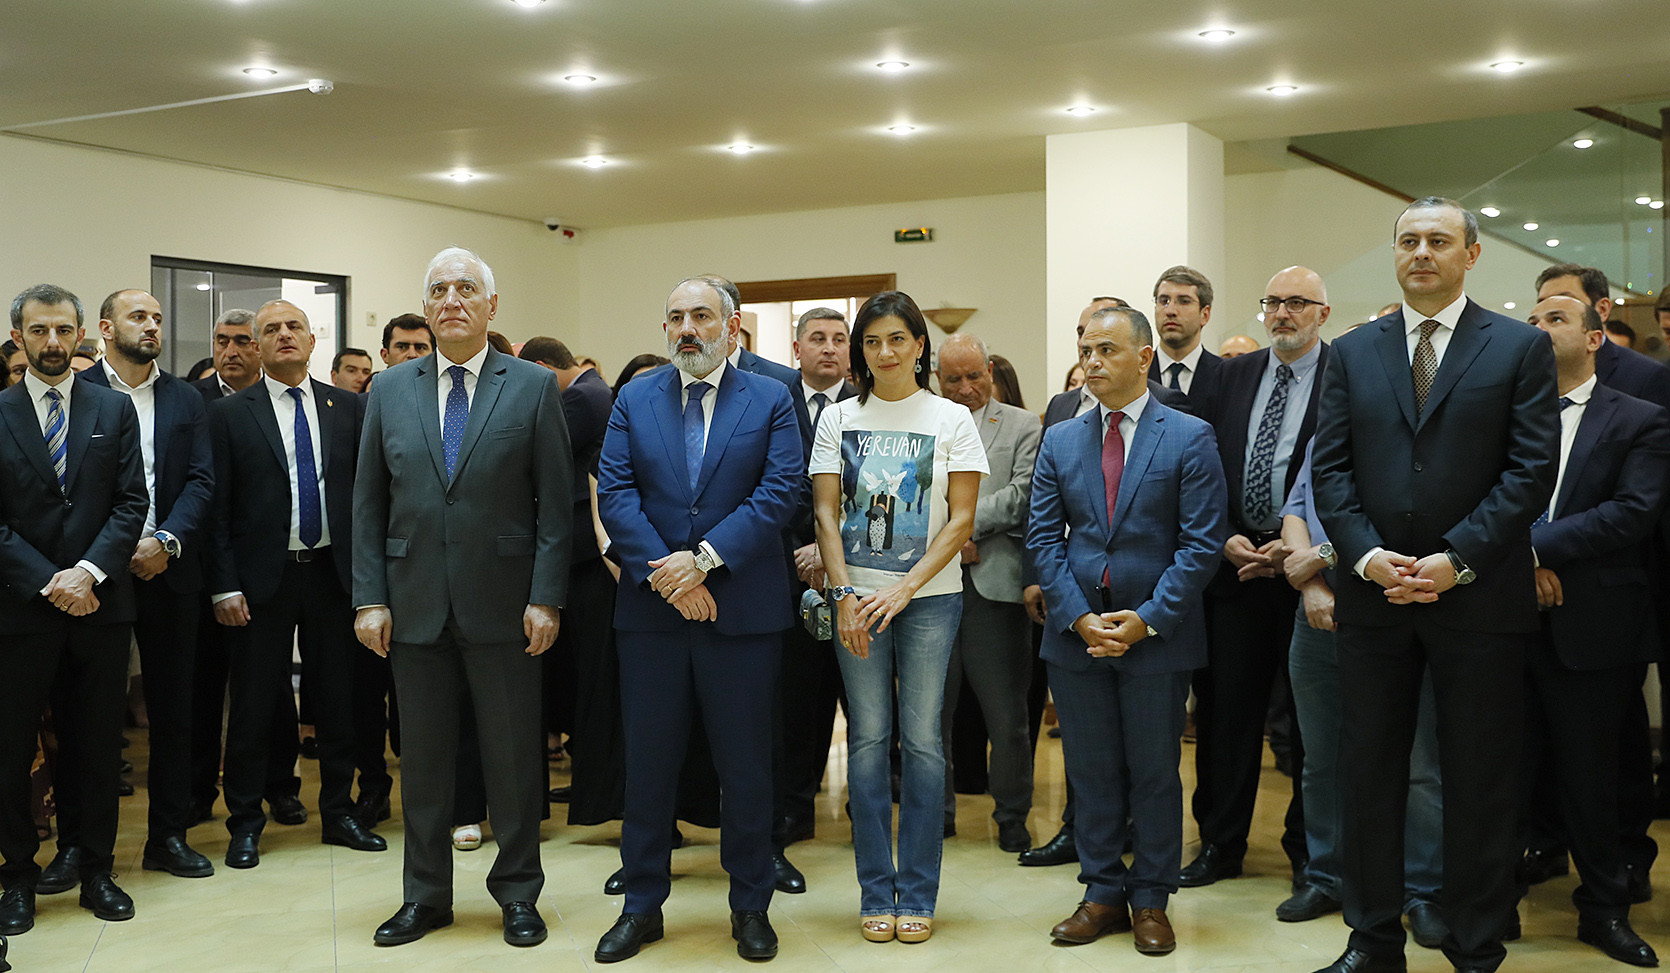 Երևանում բացվեց Հայրենադարձության և ինտեգրման առաջին կենտրոնը